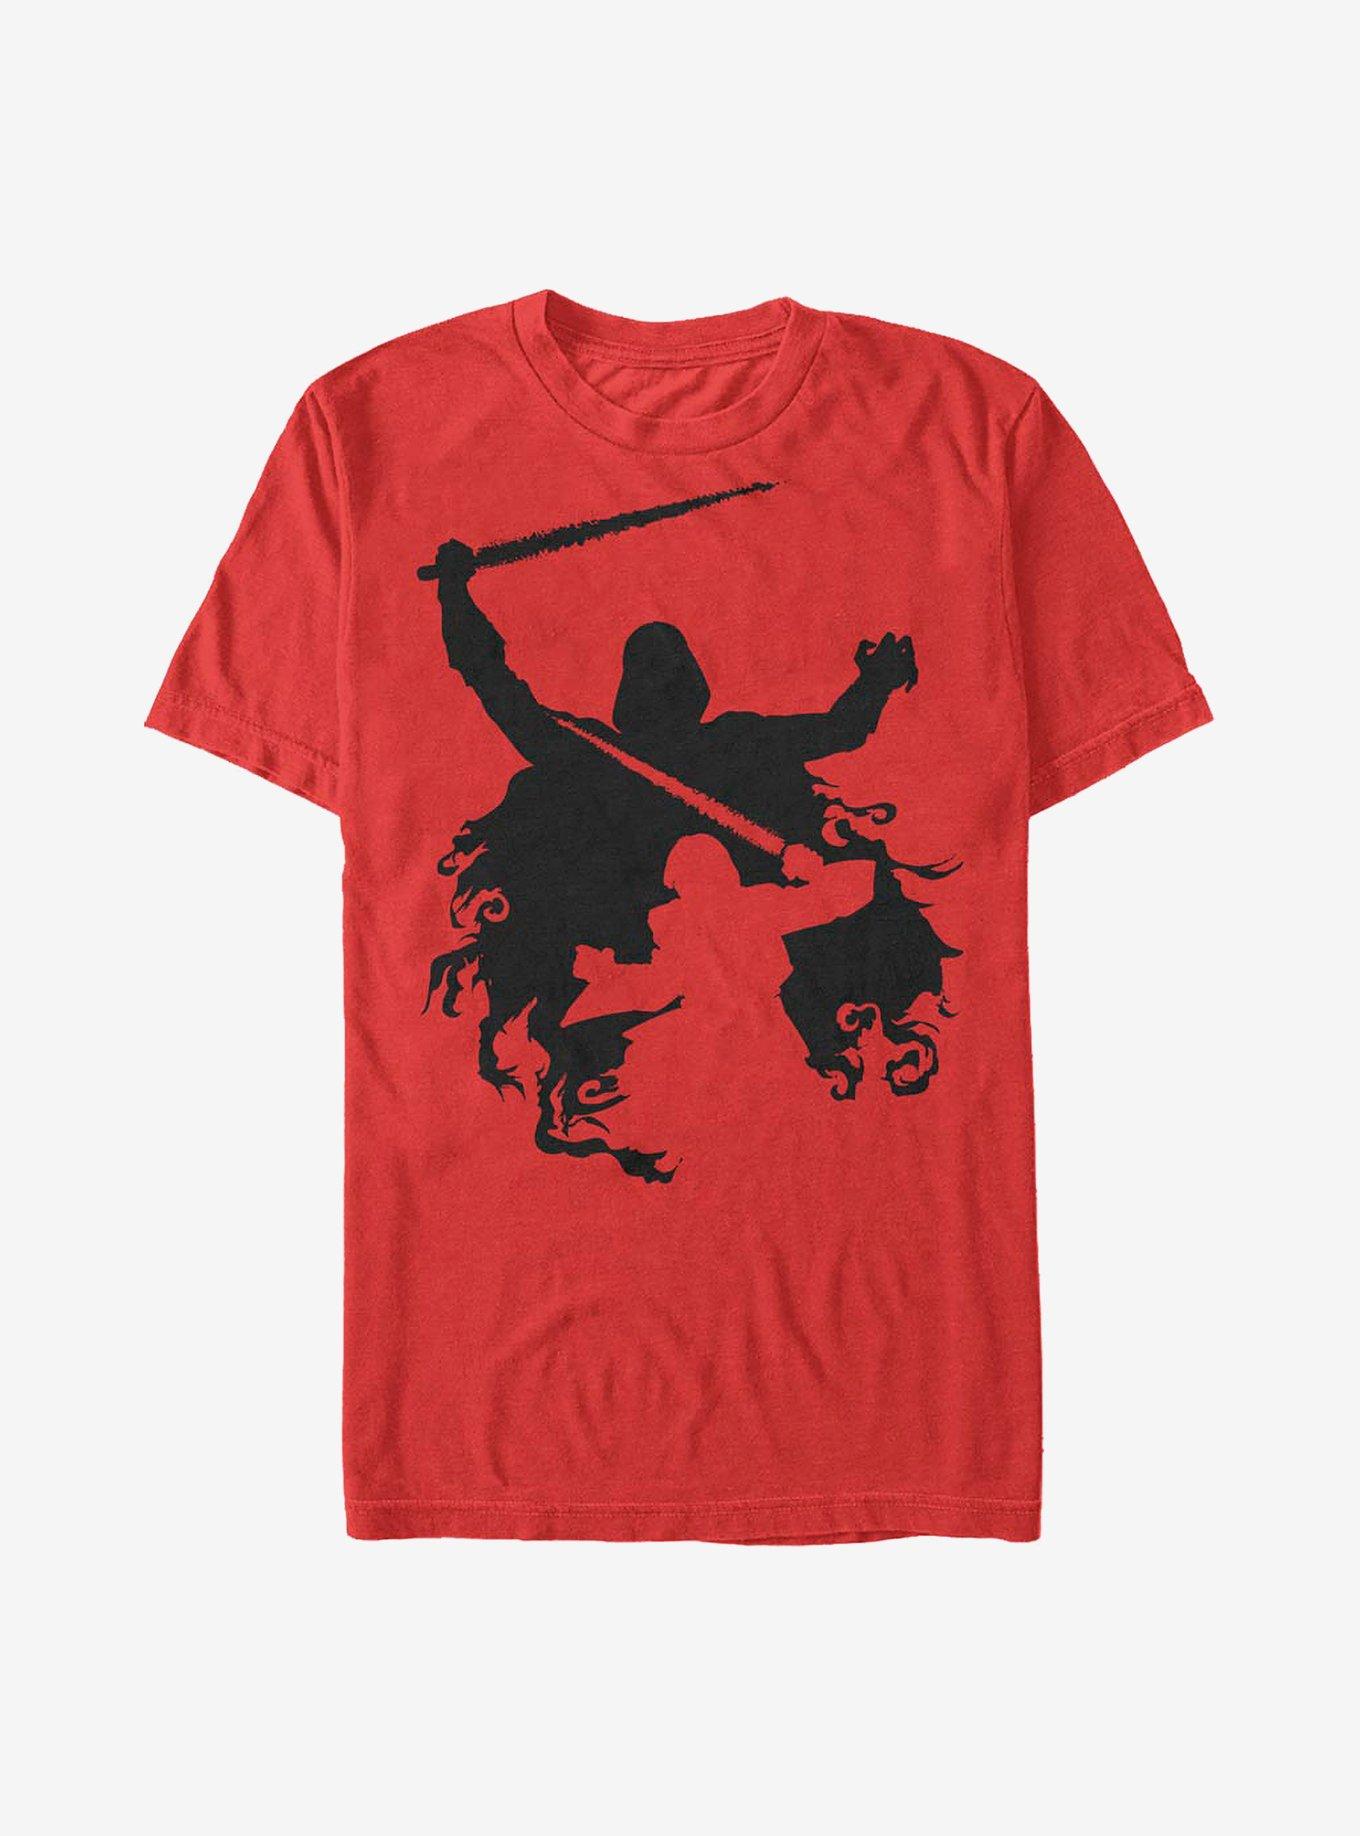 Star Wars Shadows T-Shirt, RED, hi-res